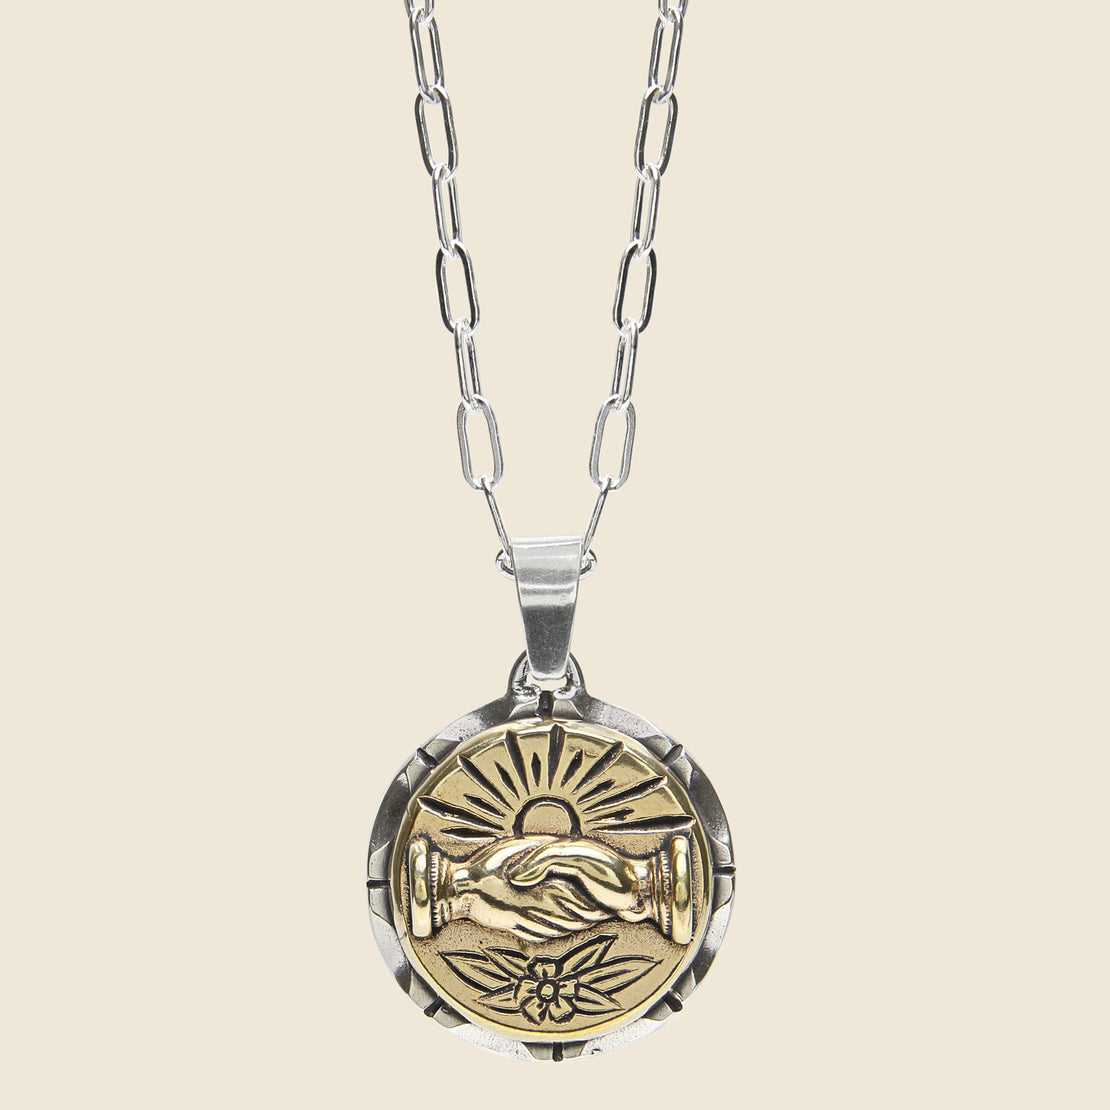 LHN Jewelry Fellowship Souvenir Necklace - Silver/Brass